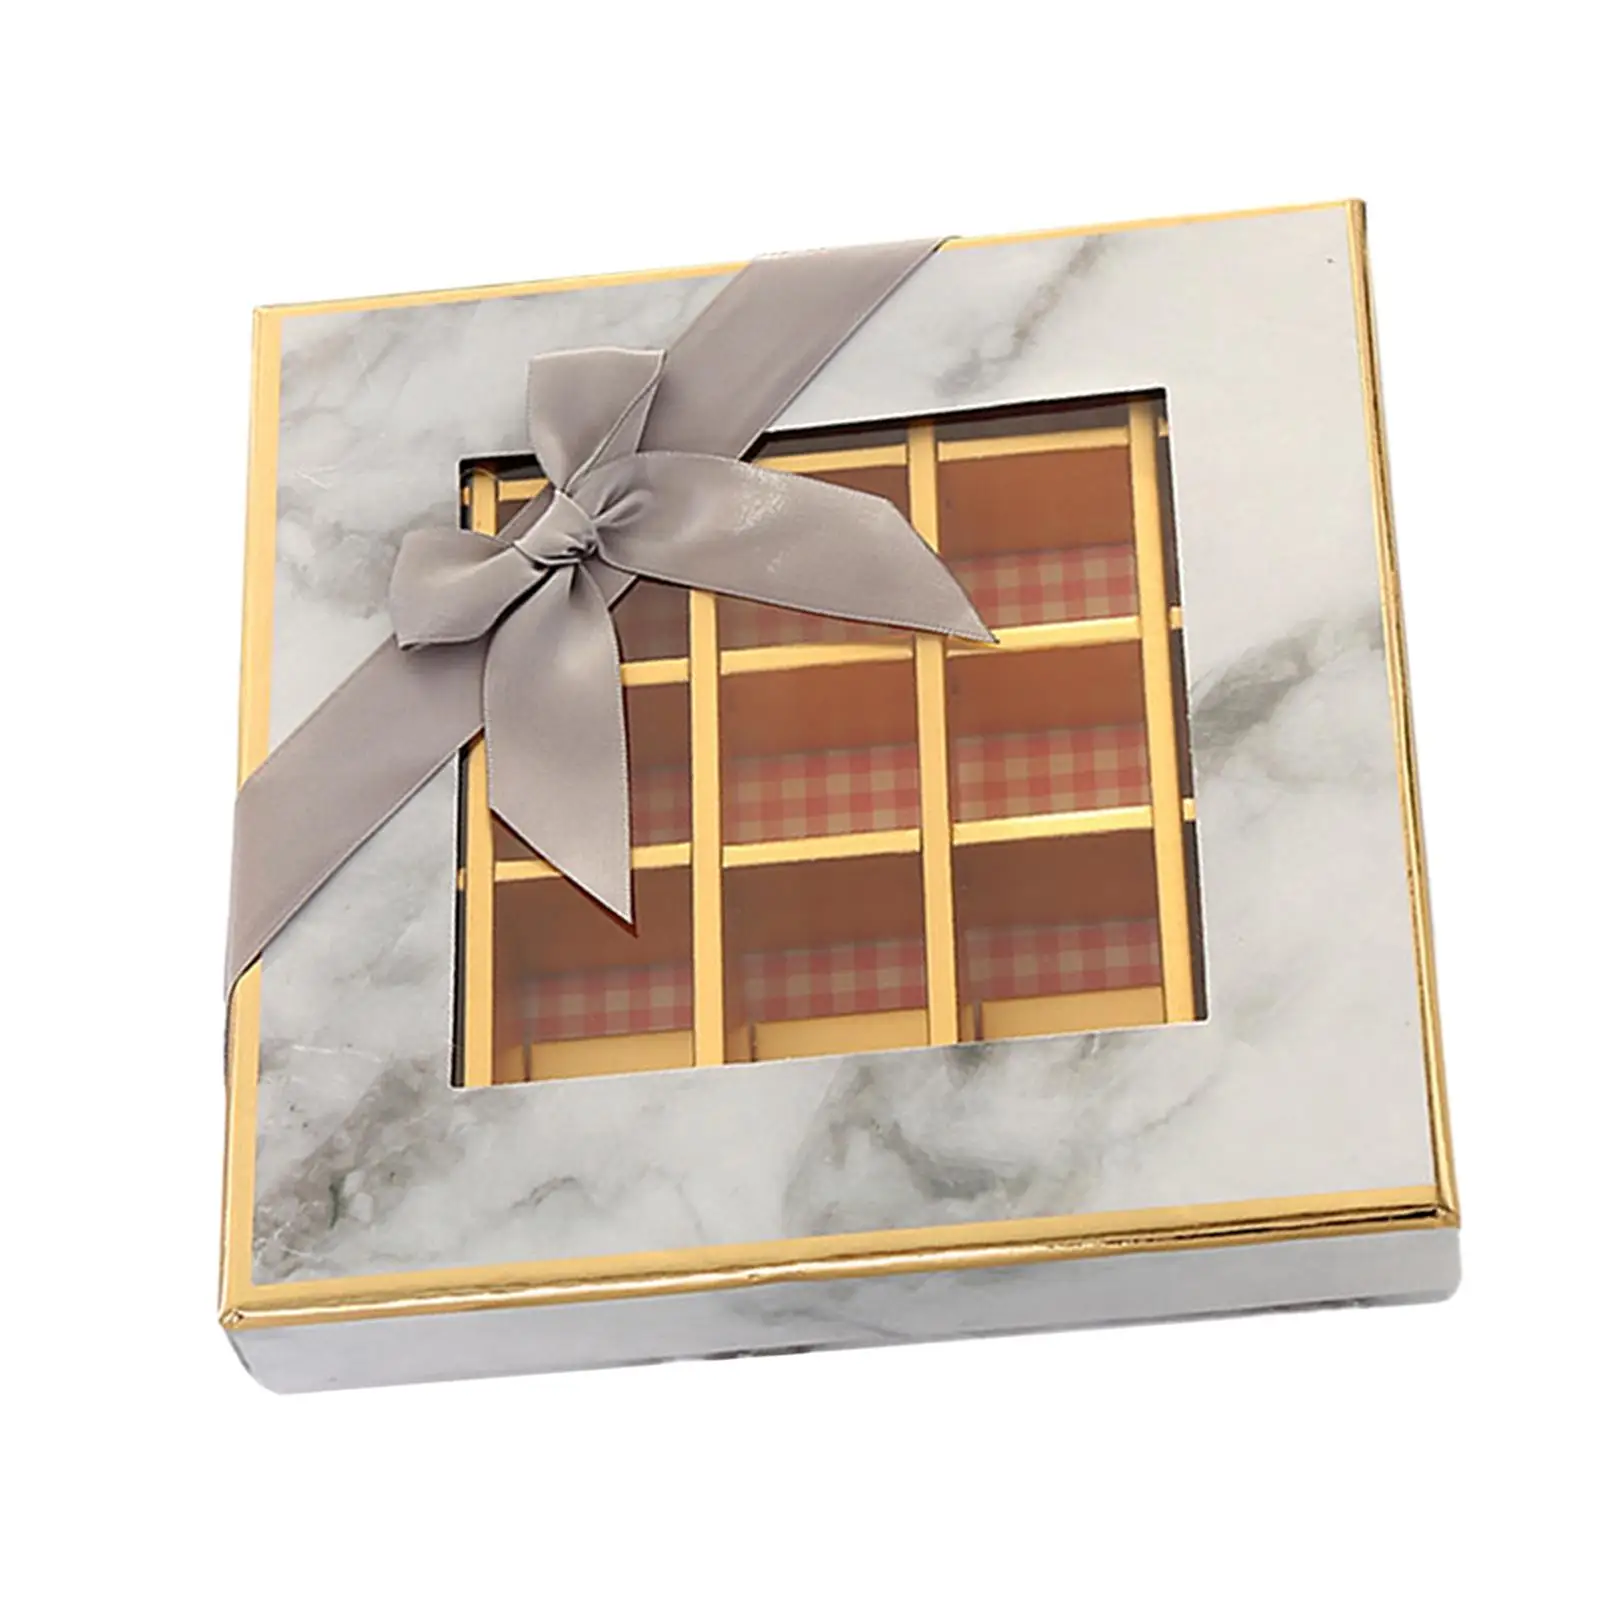 Csokoládé kijelző doboz 9 rácsos doboz ablakos doboz divatos könnyű ajándékcsomagoló doboz barátnőnek Barát karácsony - 1